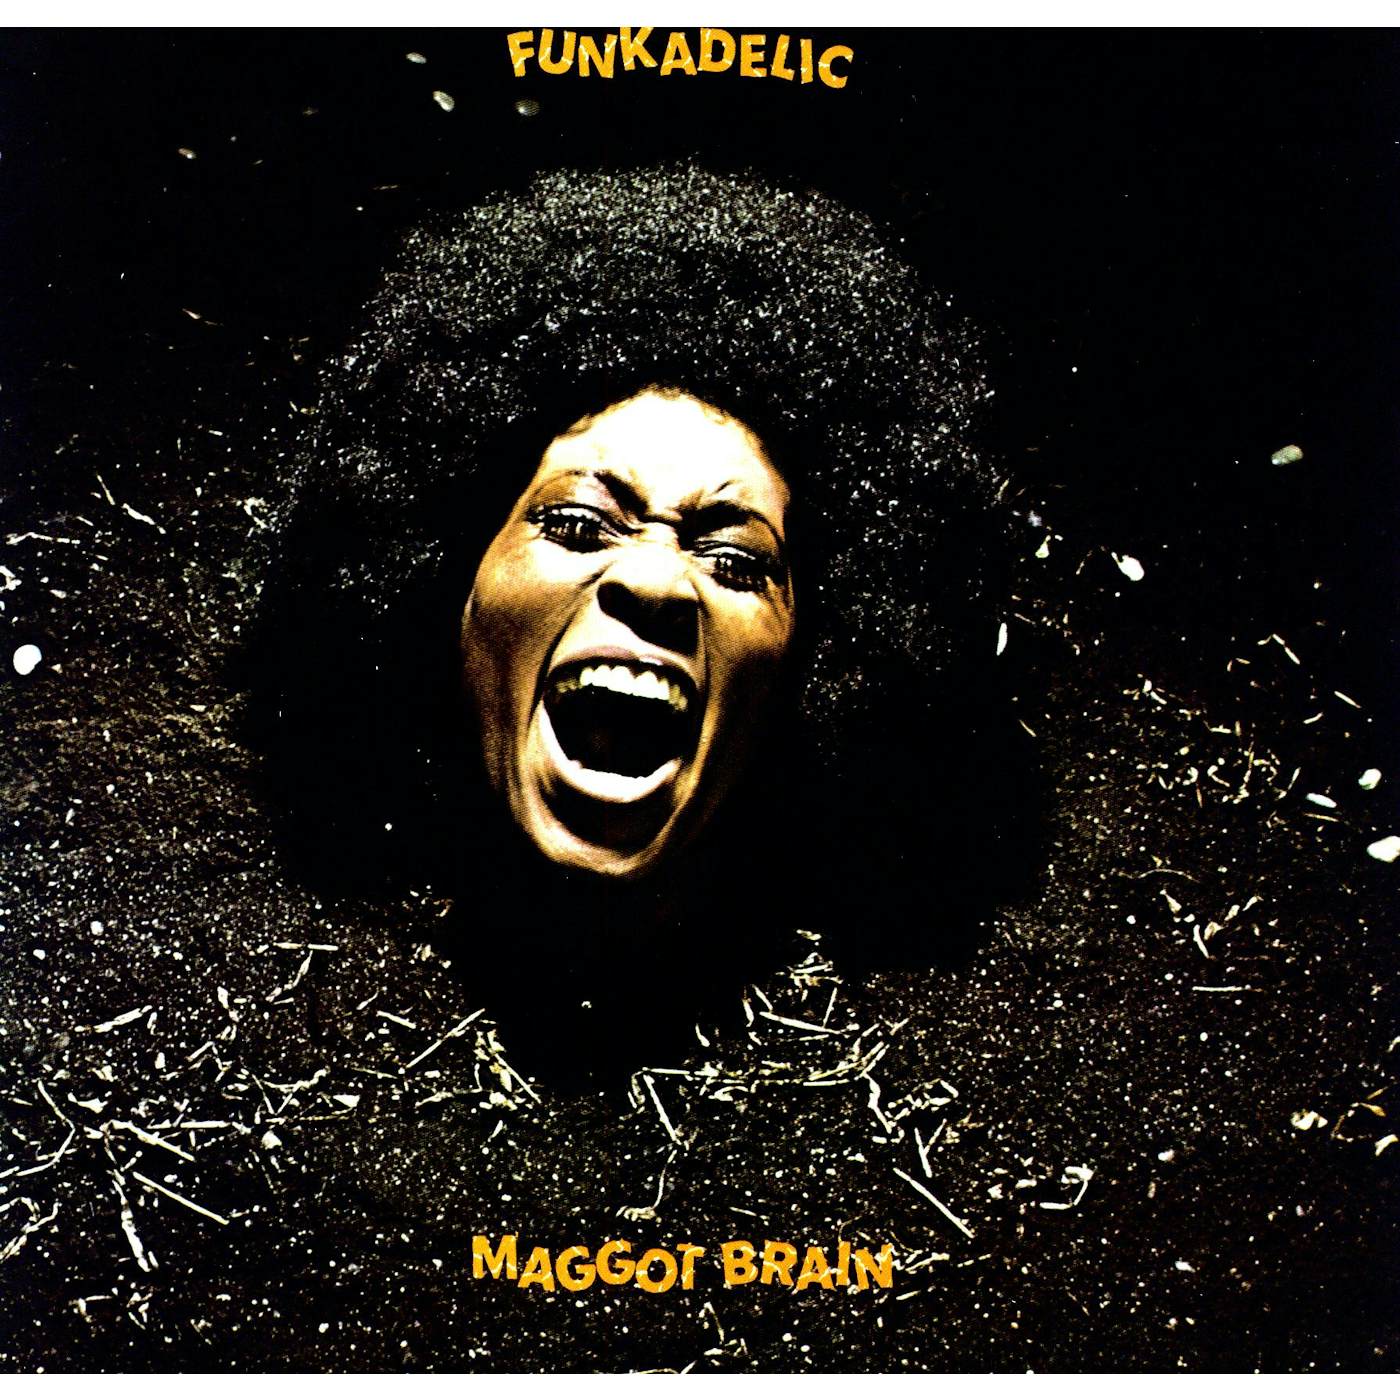 Funkadelic Maggot Brain Vinyl Record